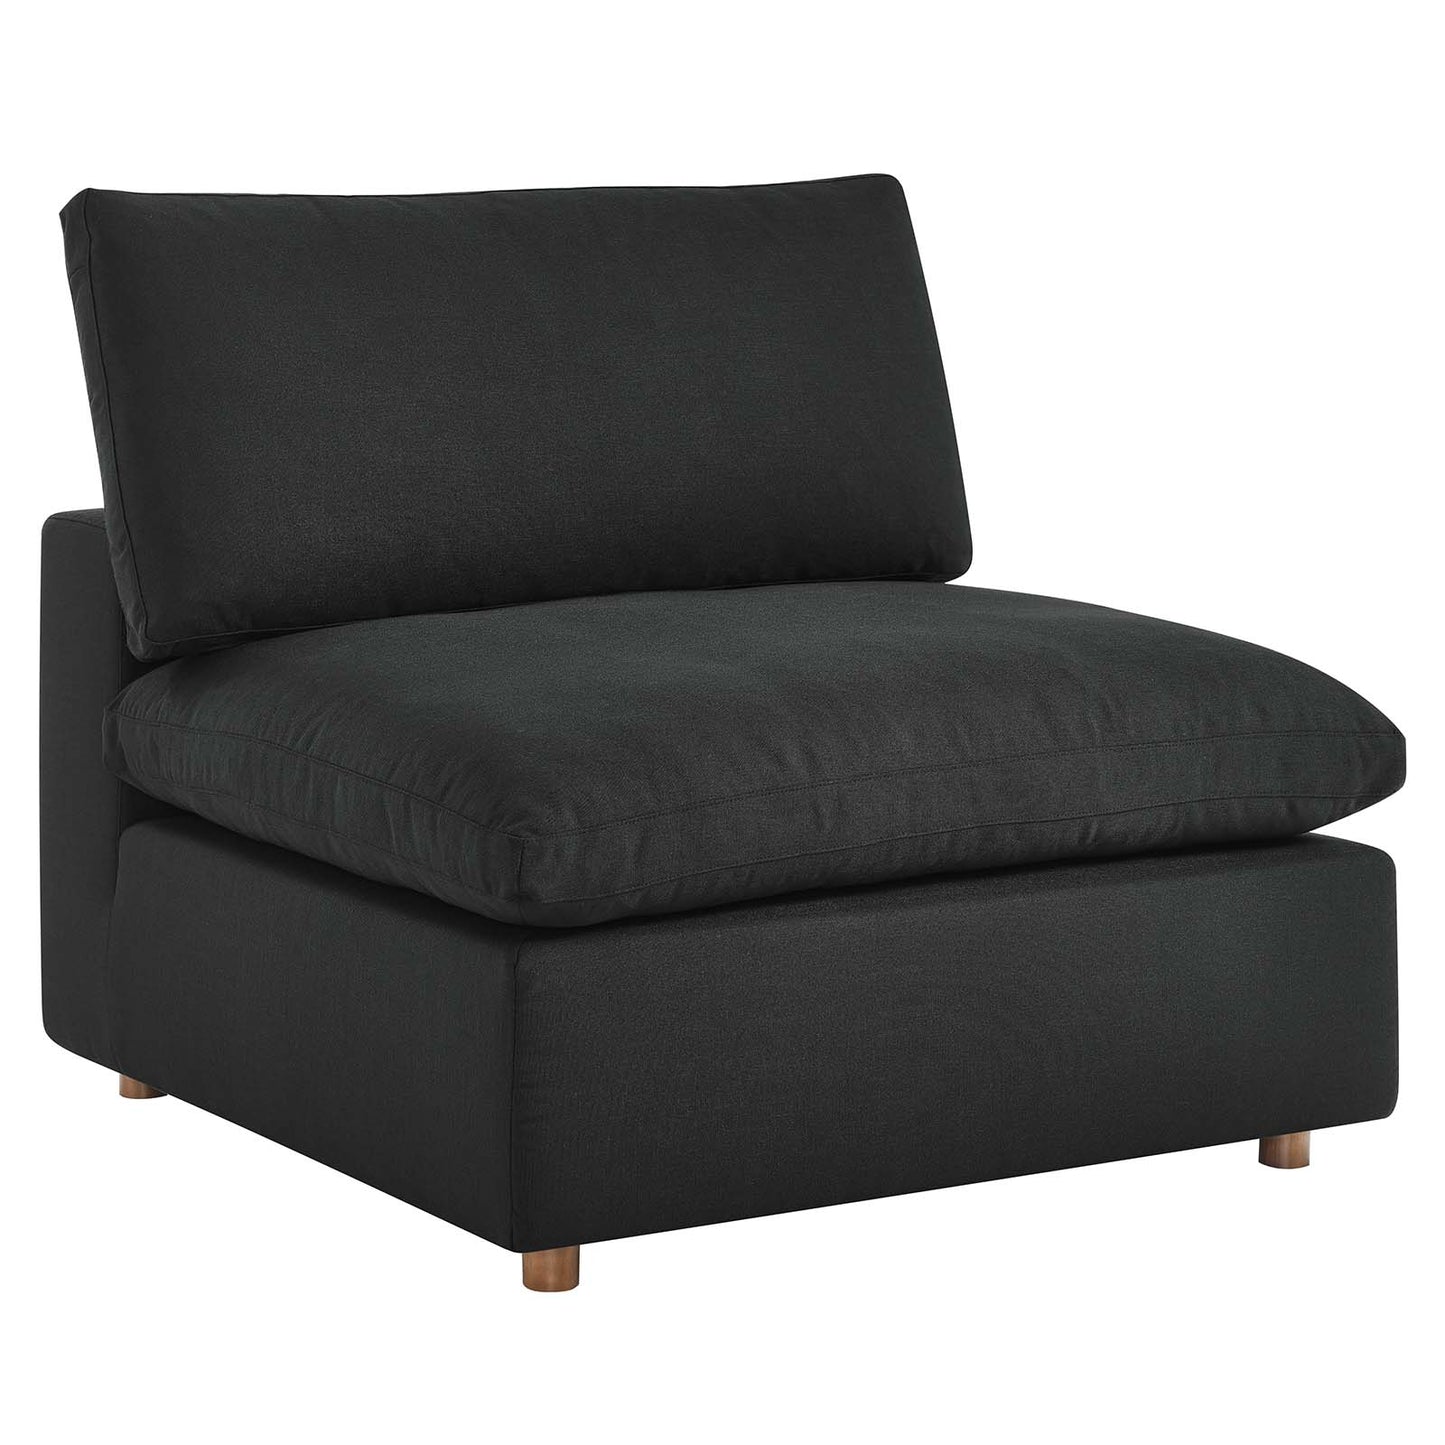 Commix Down Filled Overstuffed 3 Piece Sectional Sofa Set Black EEI-3355-BLK